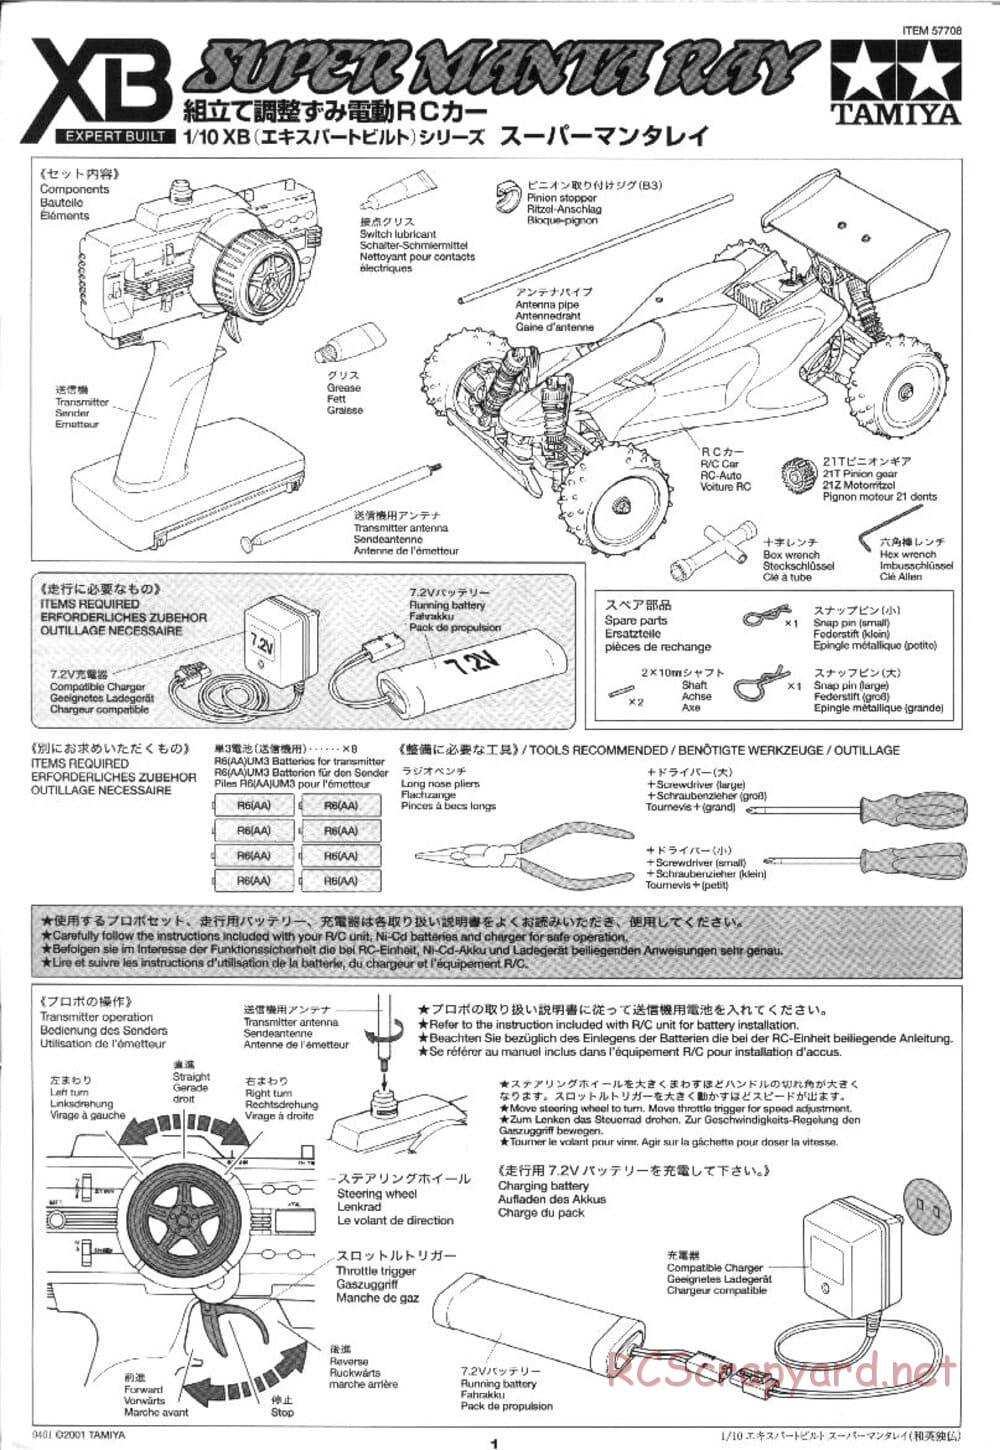 Tamiya - XB Super Manta Ray - DF-01 Chassis - Manual - Page 1